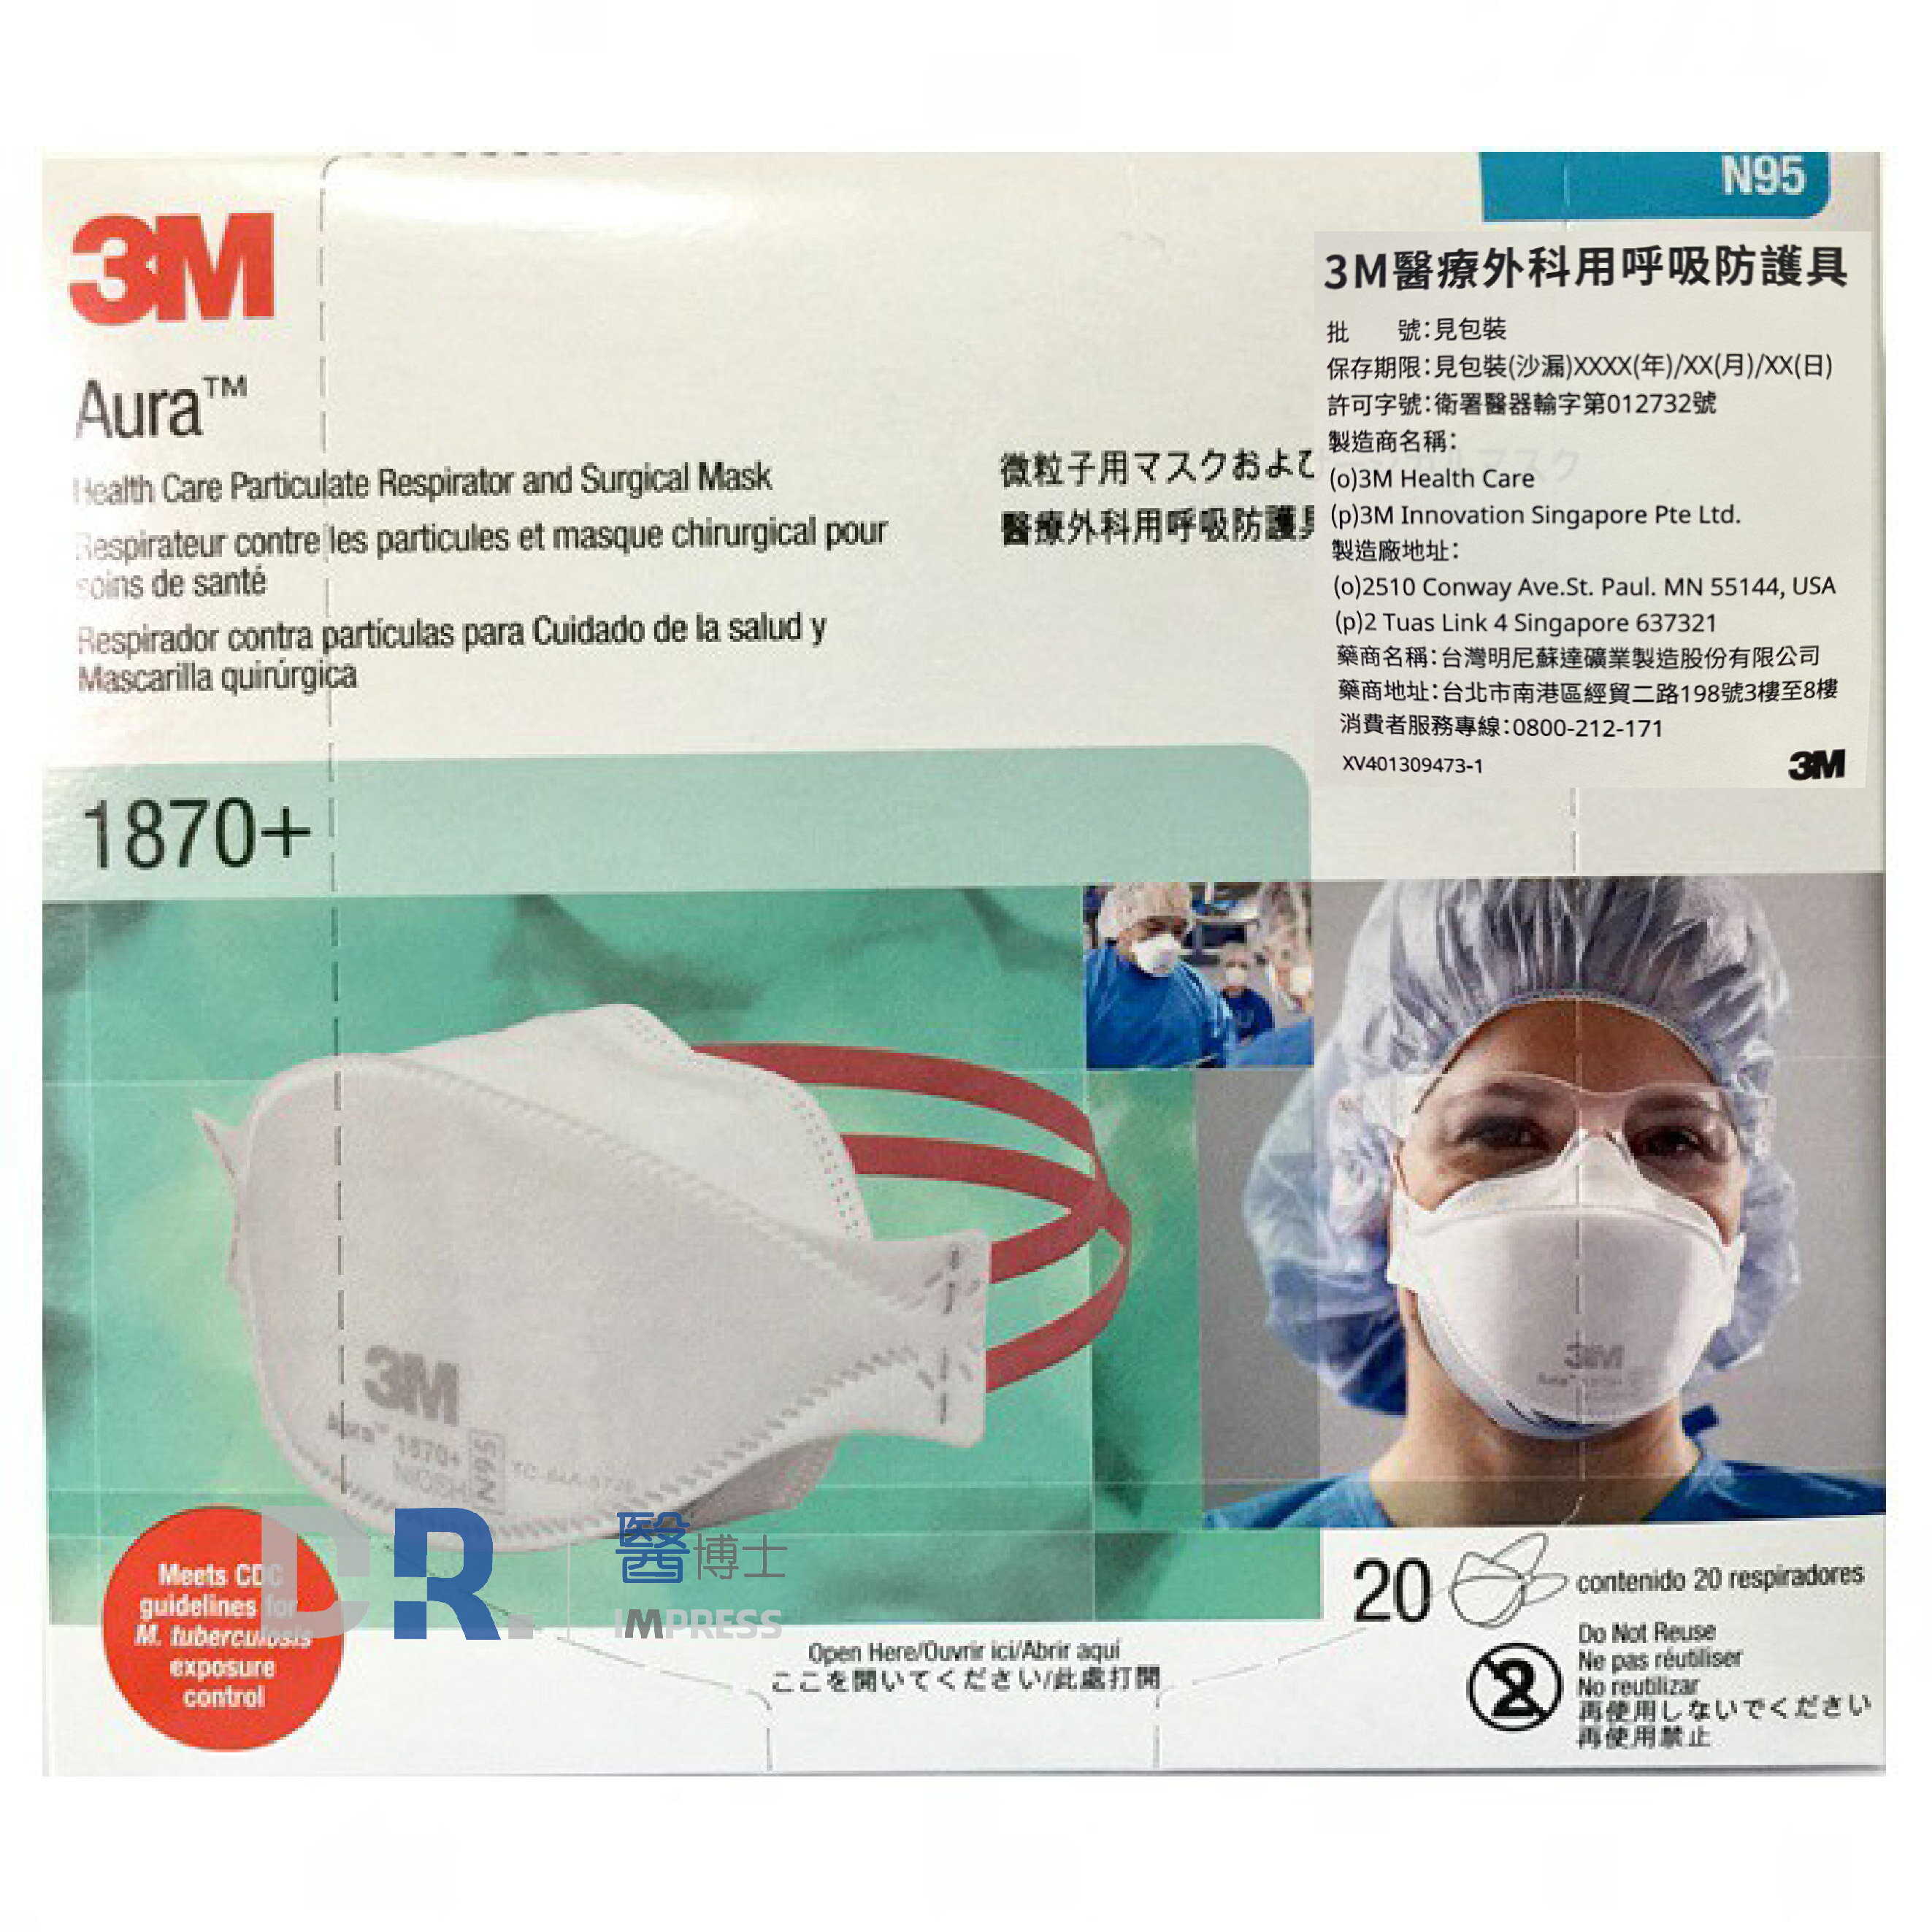 【醫博士】3M Aura 1870+ 醫療外科用呼吸防護具 N95口罩 單片包裝